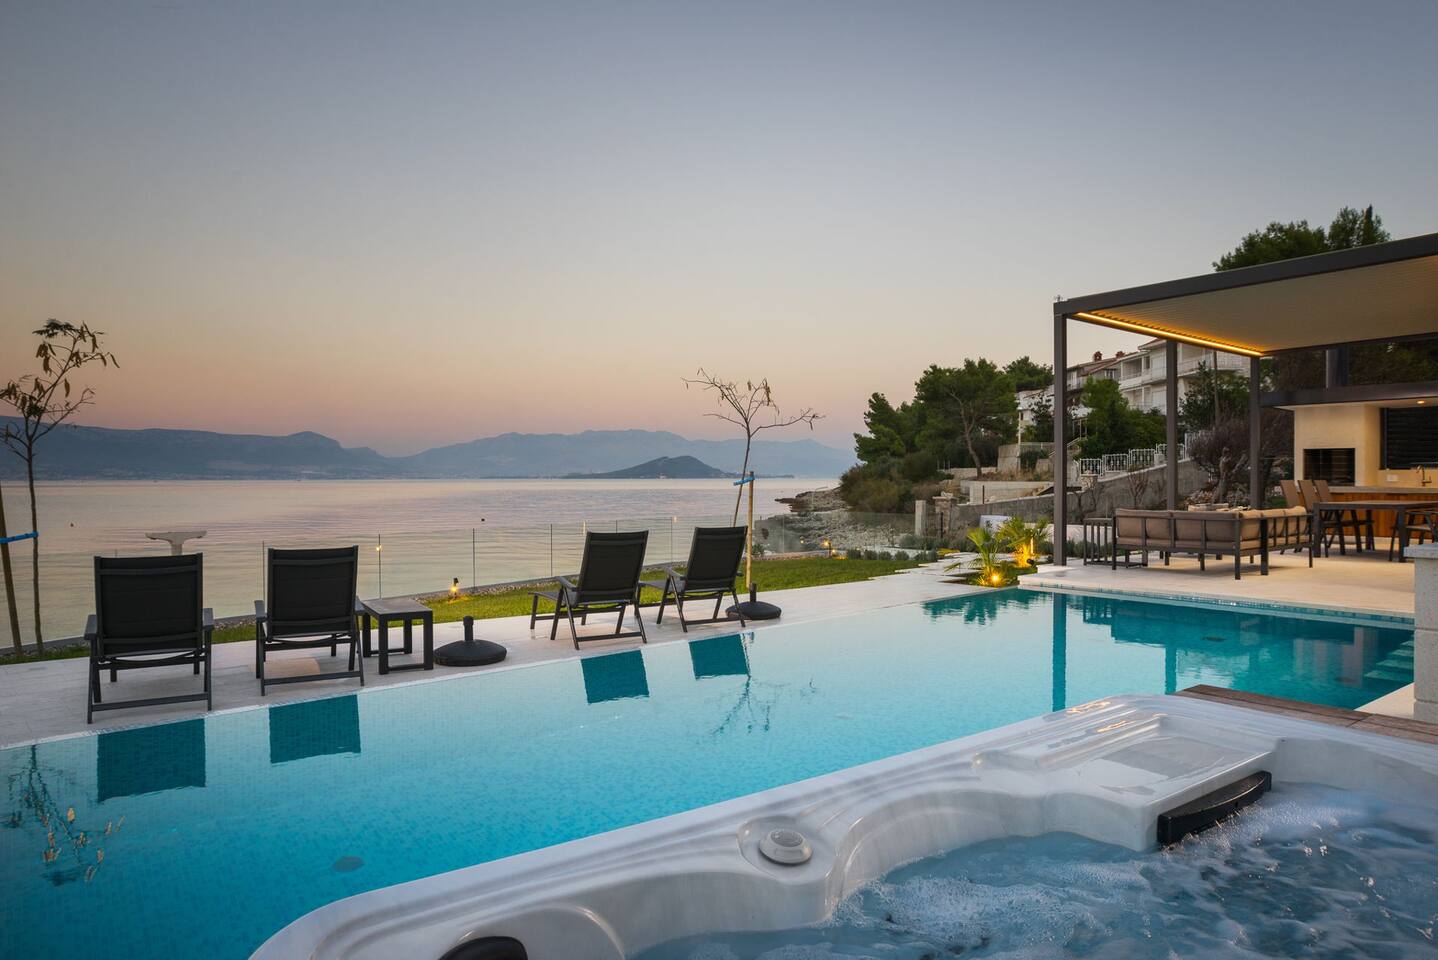 TROGIR РОСКОШНЫЕ ВИЛЛЫ - роскошная вилла Grey Martini на пляже с бассейном, джакузи и тренажерным залом на острове Ciovo